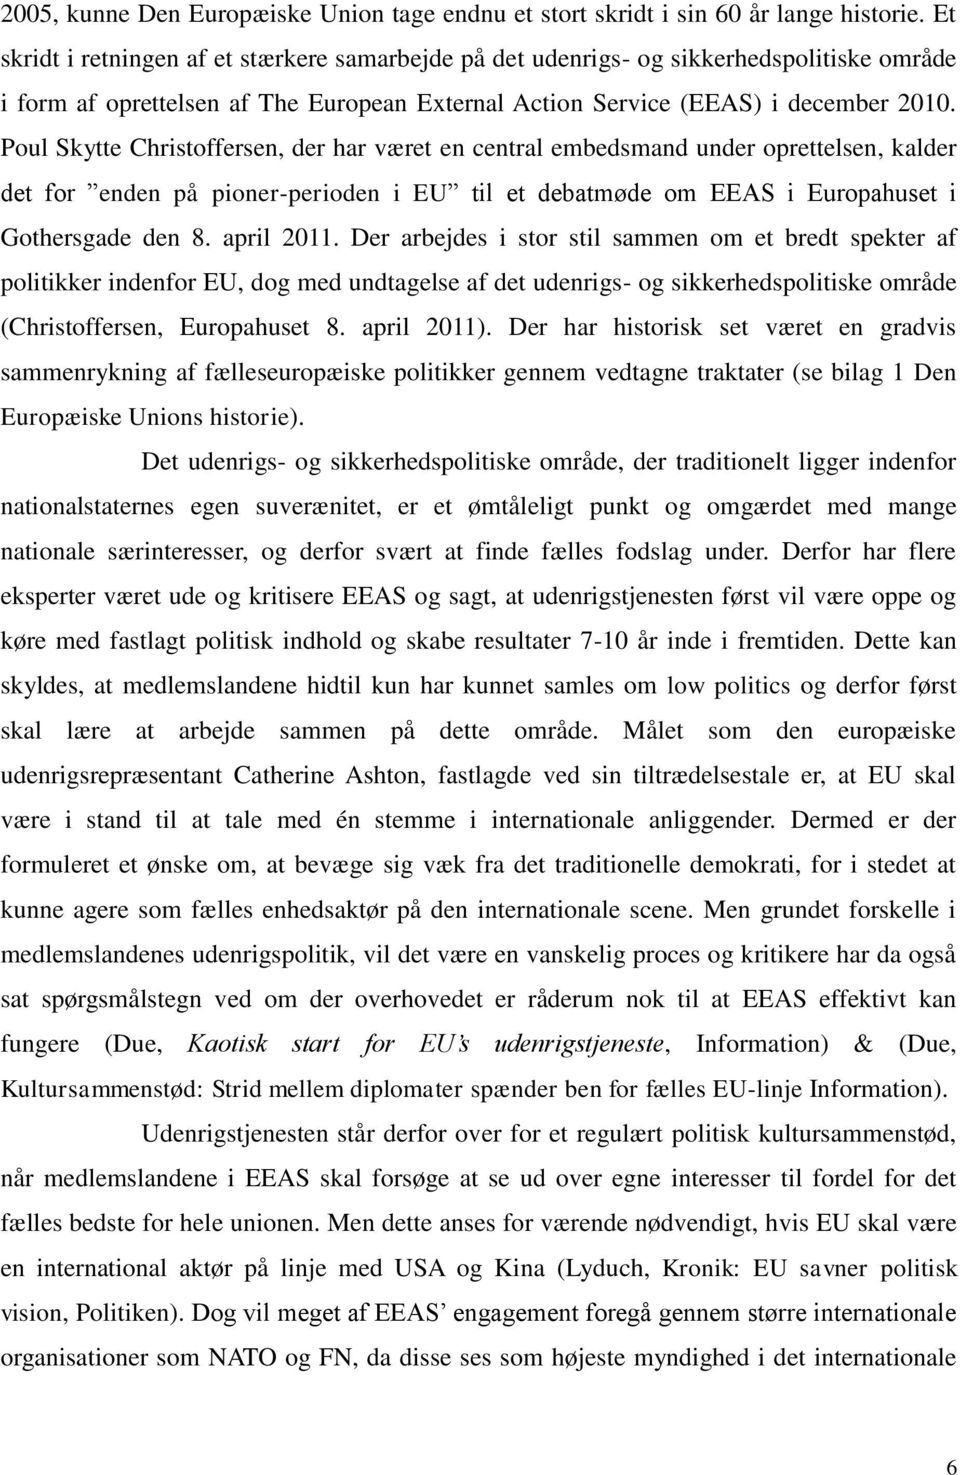 Poul Skytte Christoffersen, der har været en central embedsmand under oprettelsen, kalder det for enden på pioner-perioden i EU til et debatmøde om EEAS i Europahuset i Gothersgade den 8. april 2011.